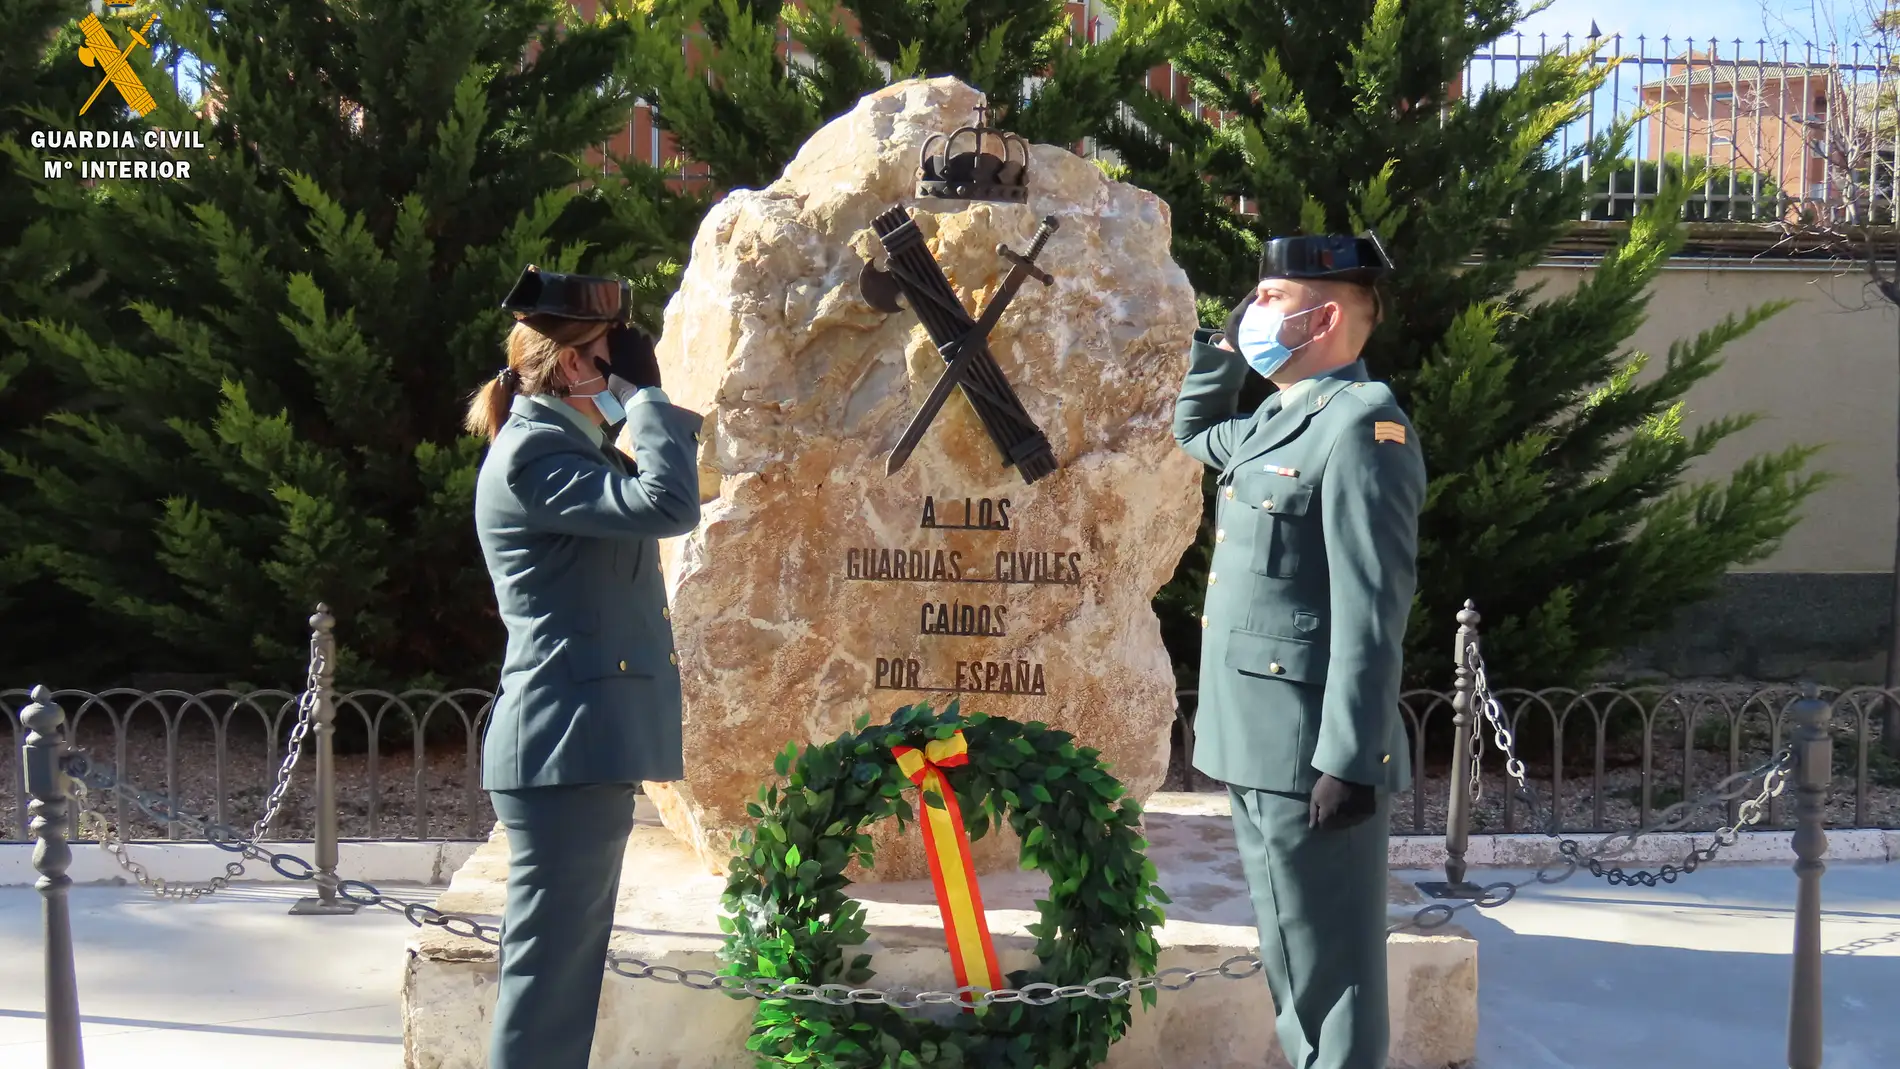 La Comandancia de Palencia inaugura un monolito en homenaje a los Guardias Civiles caídos por España